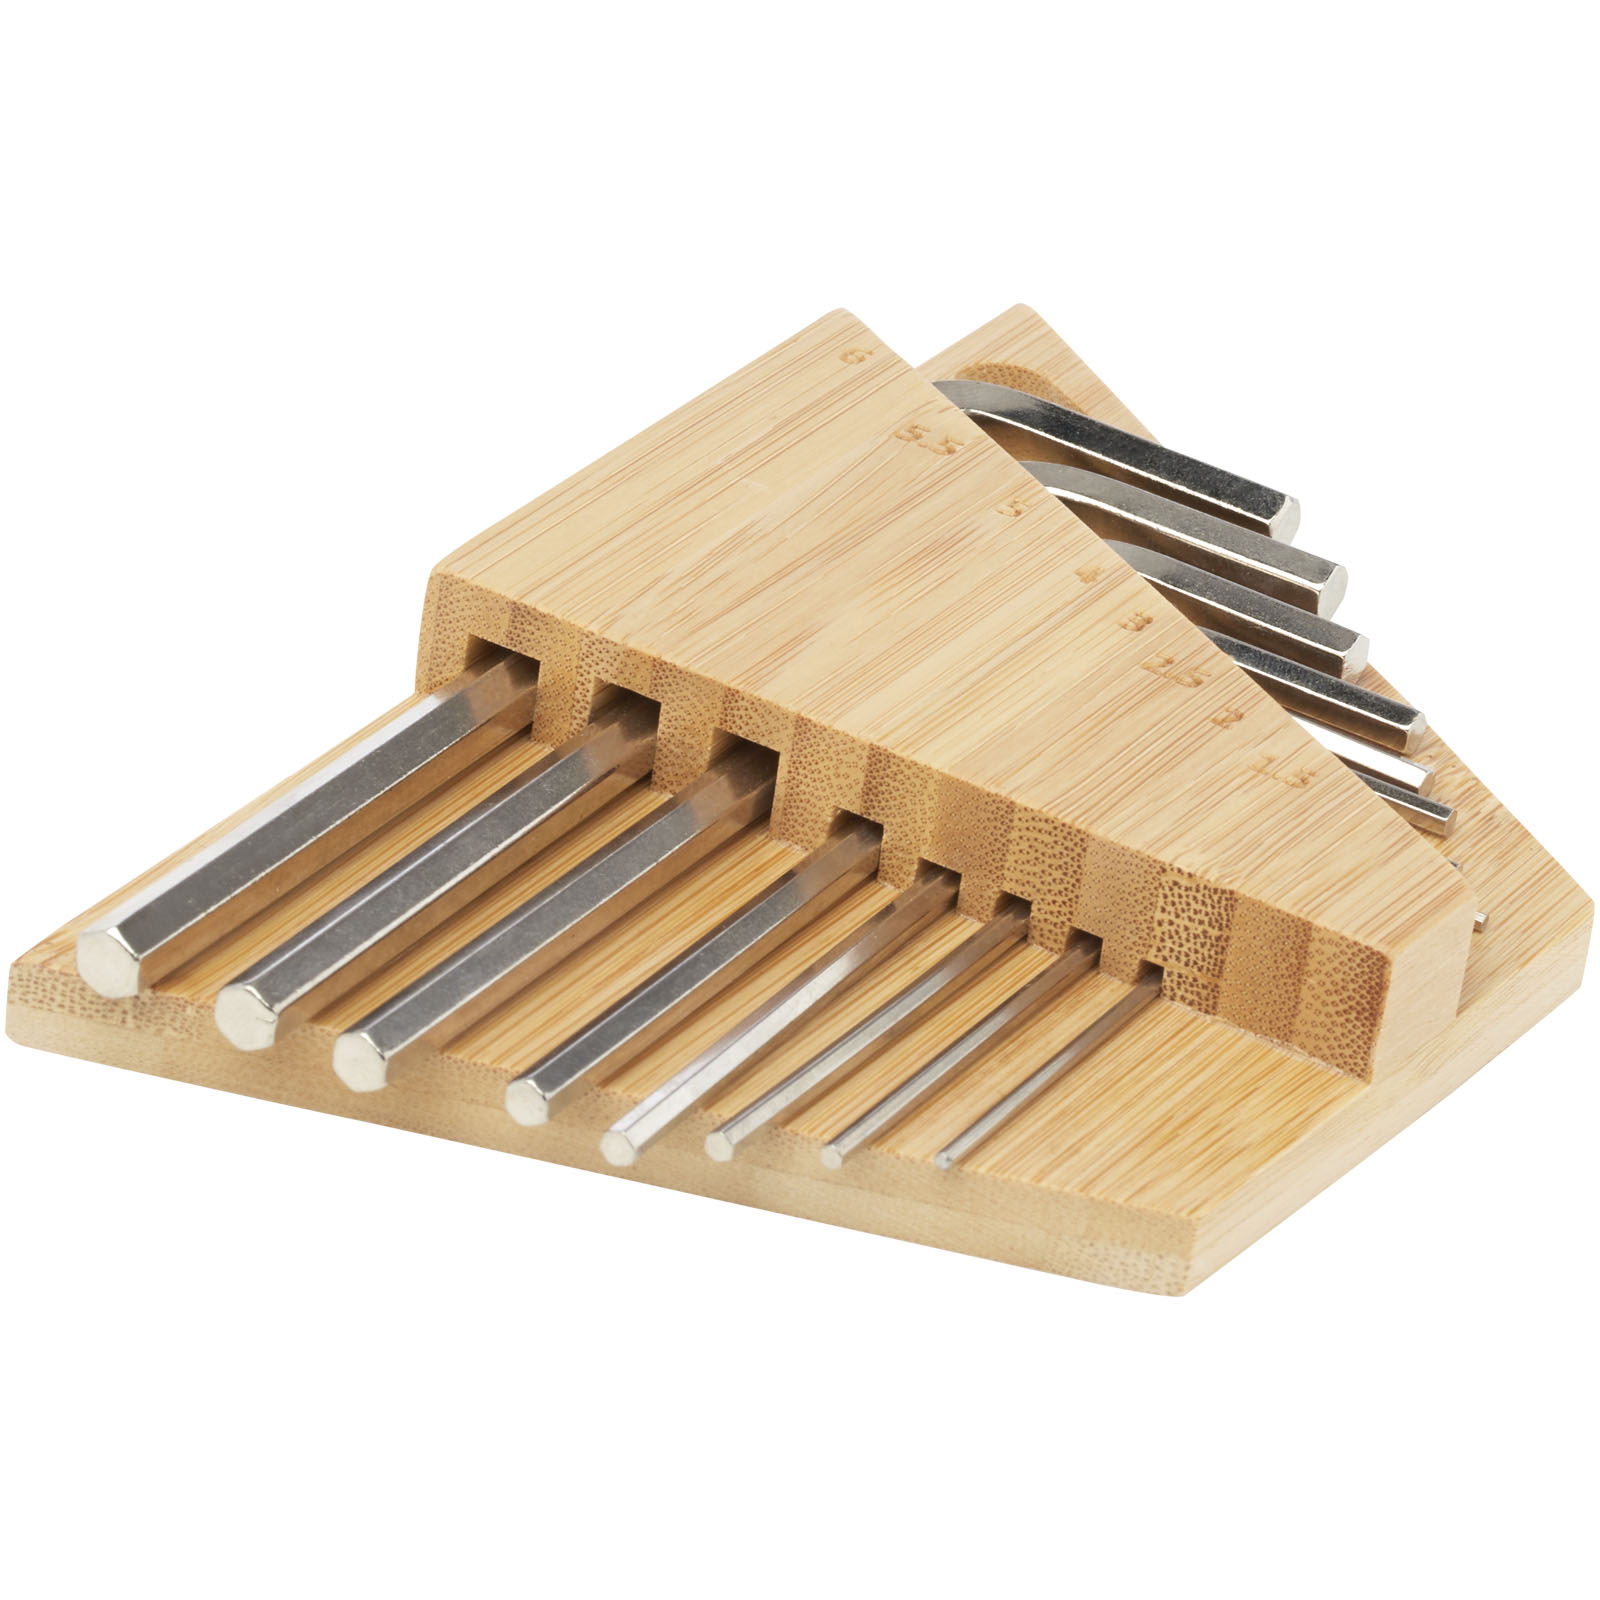 Tools & Car Accessories - Allen bamboo hex key tool set